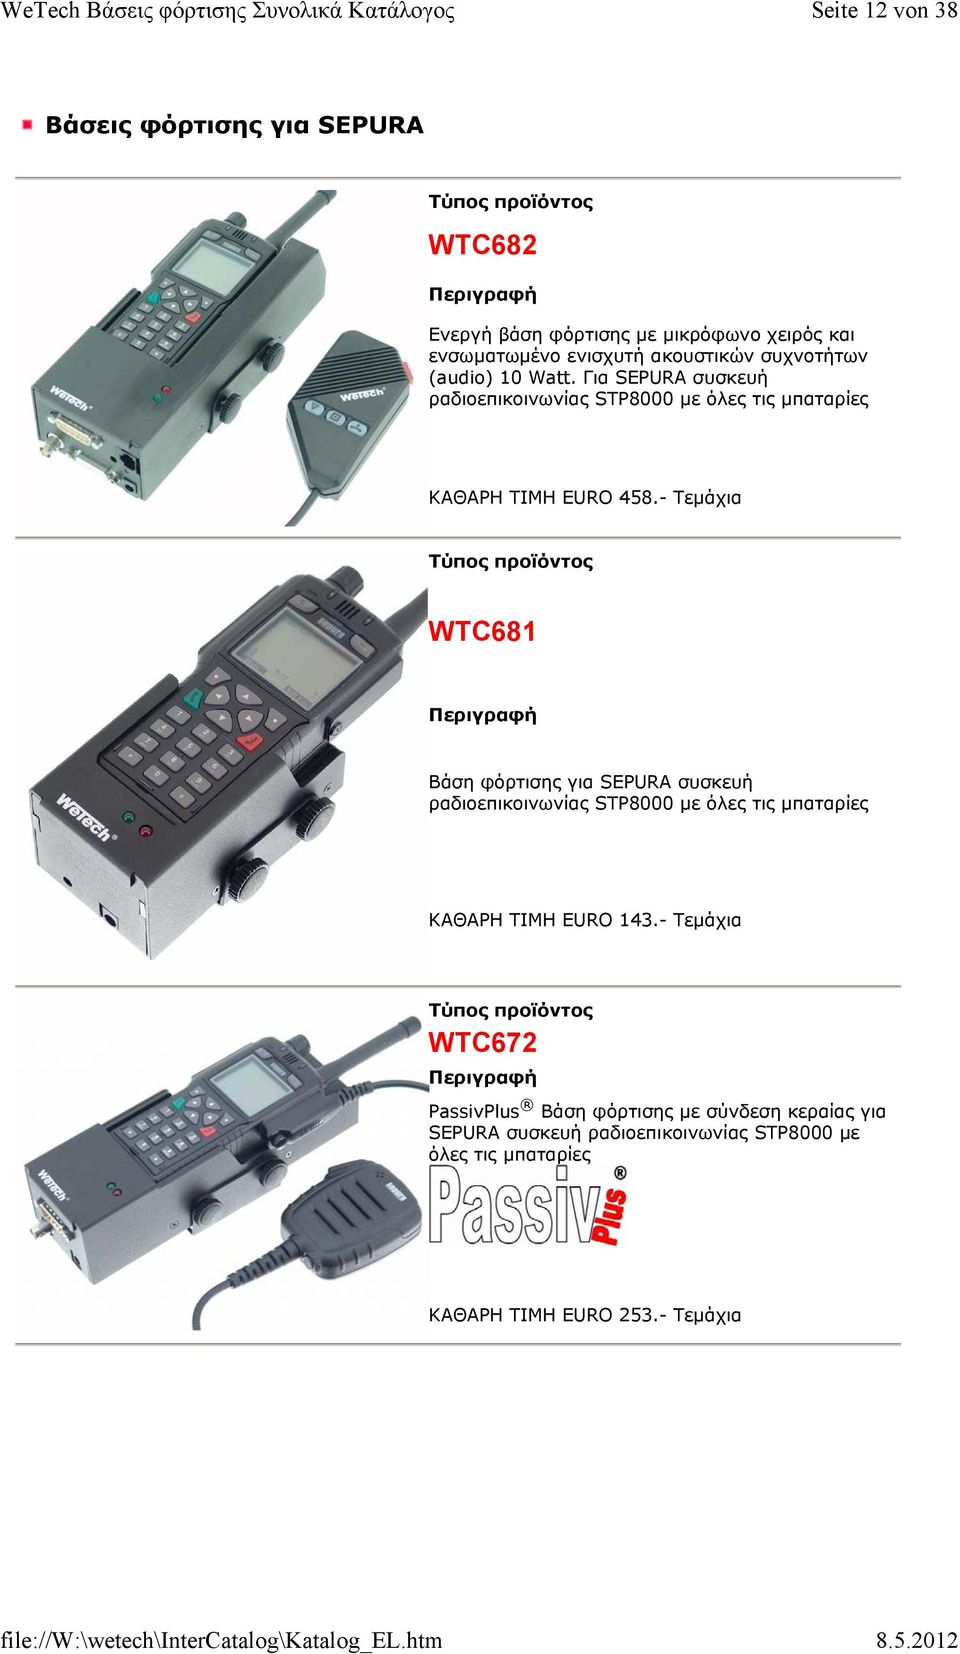 - Τεμάχια WTC681 Βάση φόρτισης για SEPURA συσκευή ραδιοεπικοινωνίας STP8000 με όλες τις μπαταρίες ΚΑΘΑΡΗ ΤΙΜΗ EURO 143.